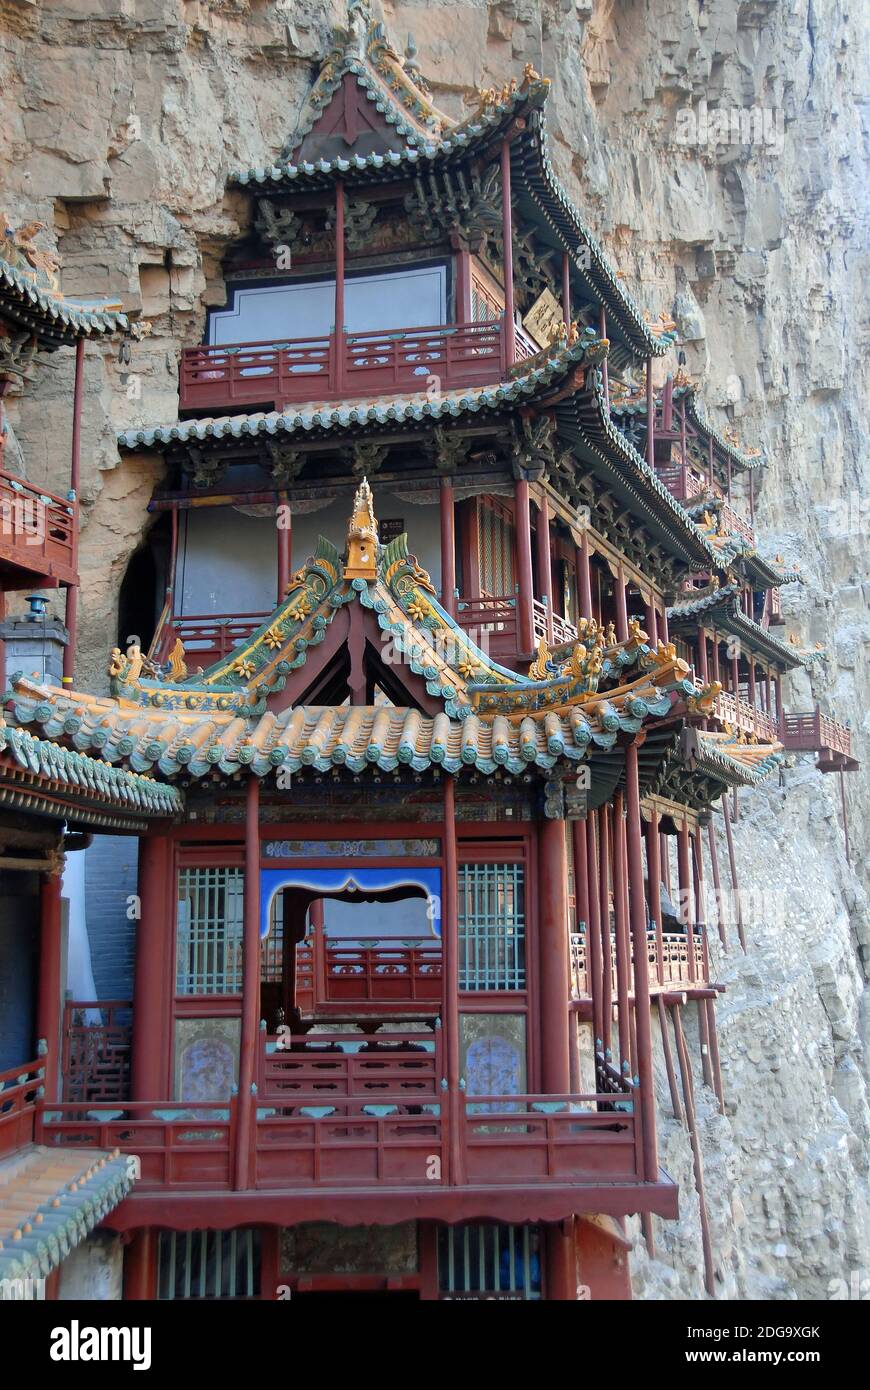 Le Temple suspendu ou Monastère suspendu près de Datong dans la province du Shanxi, en Chine. Détail de l'architecture en bois dans le temple. Banque D'Images